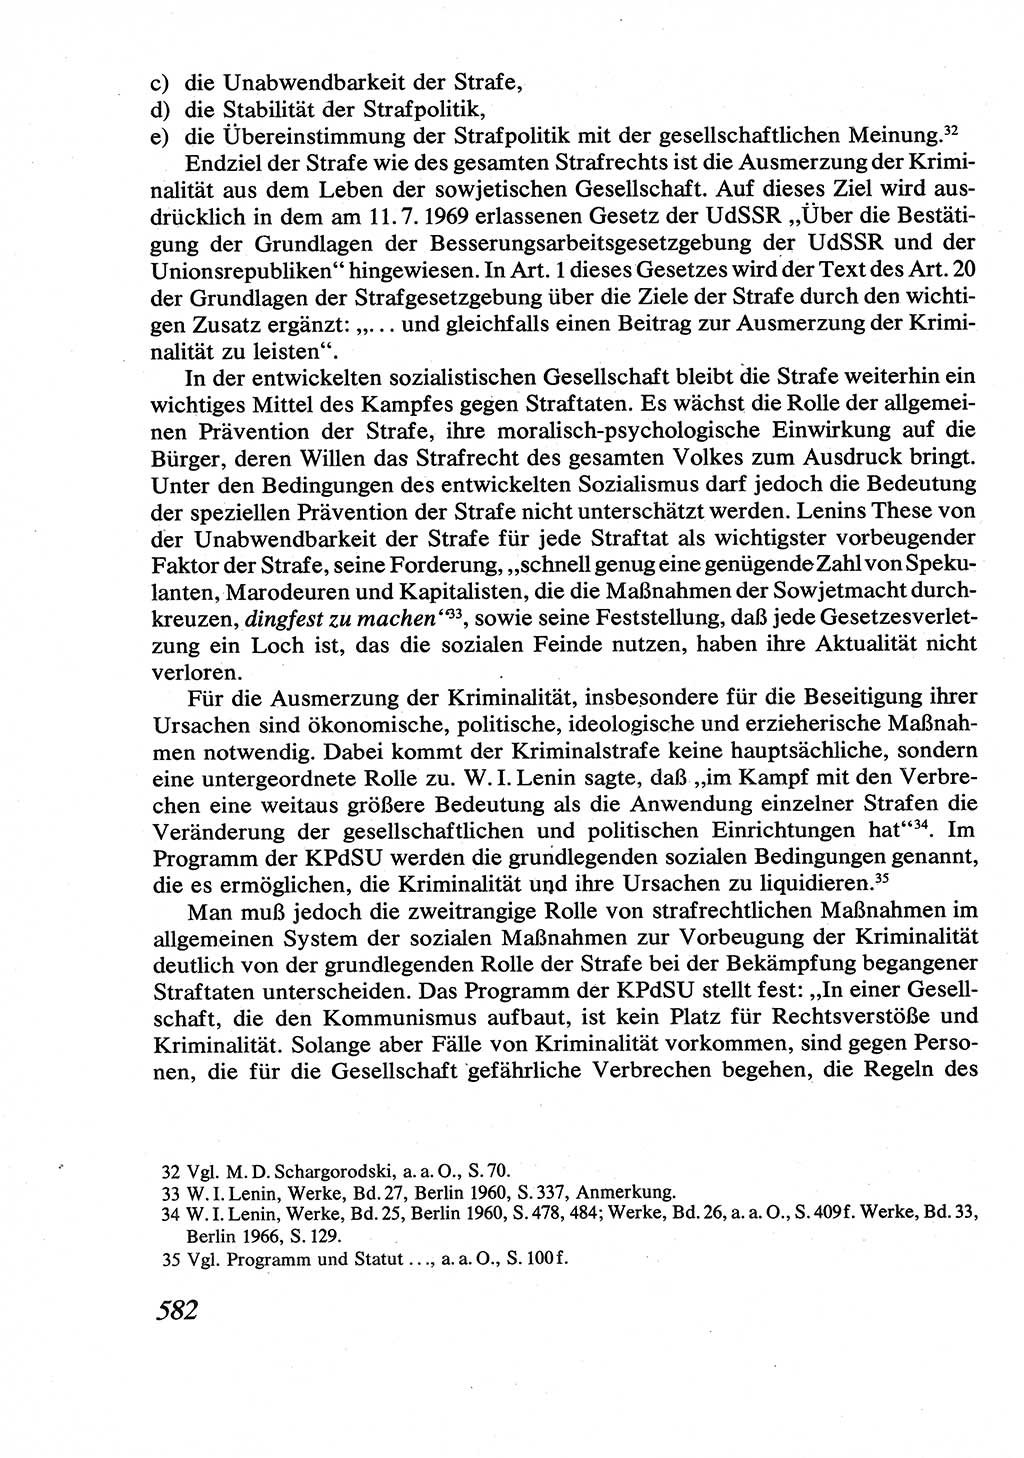 Strafrecht [Deutsche Demokratische Republik (DDR)], Allgemeiner Teil, Lehrbuch 1976, Seite 582 (Strafr. DDR AT Lb. 1976, S. 582)